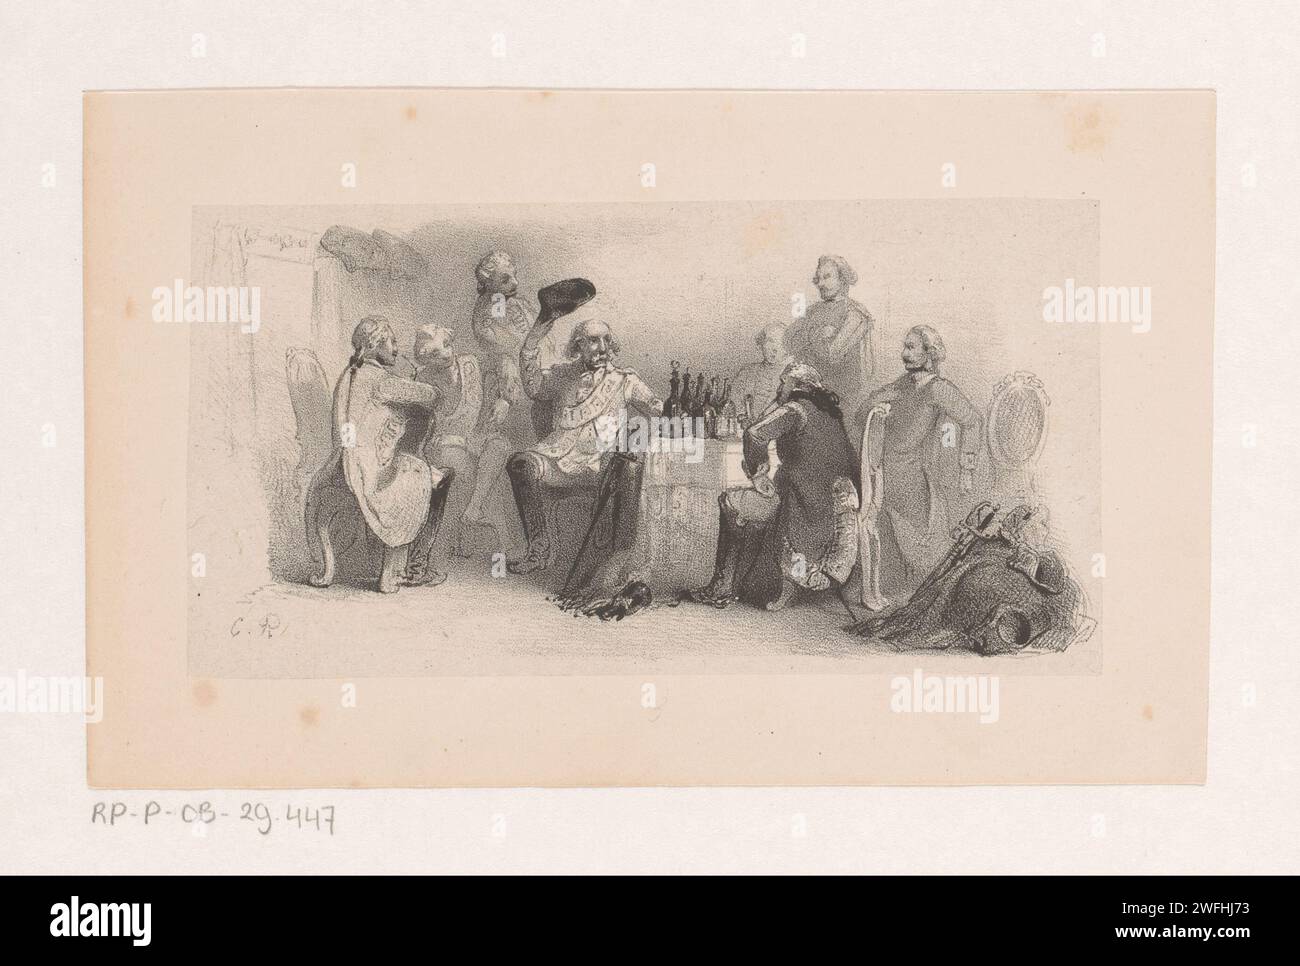 Groupe d'hommes à la table, Charles Rochussen, en ou avant 1843 imprimer dans un intérieur il y a un groupe d'hommes autour d'une table avec des bouteilles. L'homme au milieu enlève son chapeau. L'homme à droite du dos est probablement Karl Friedrich Hieronymus Baron von Münchhausen. Le journal de la Haye. homme adulte. Baron Münchausen Banque D'Images